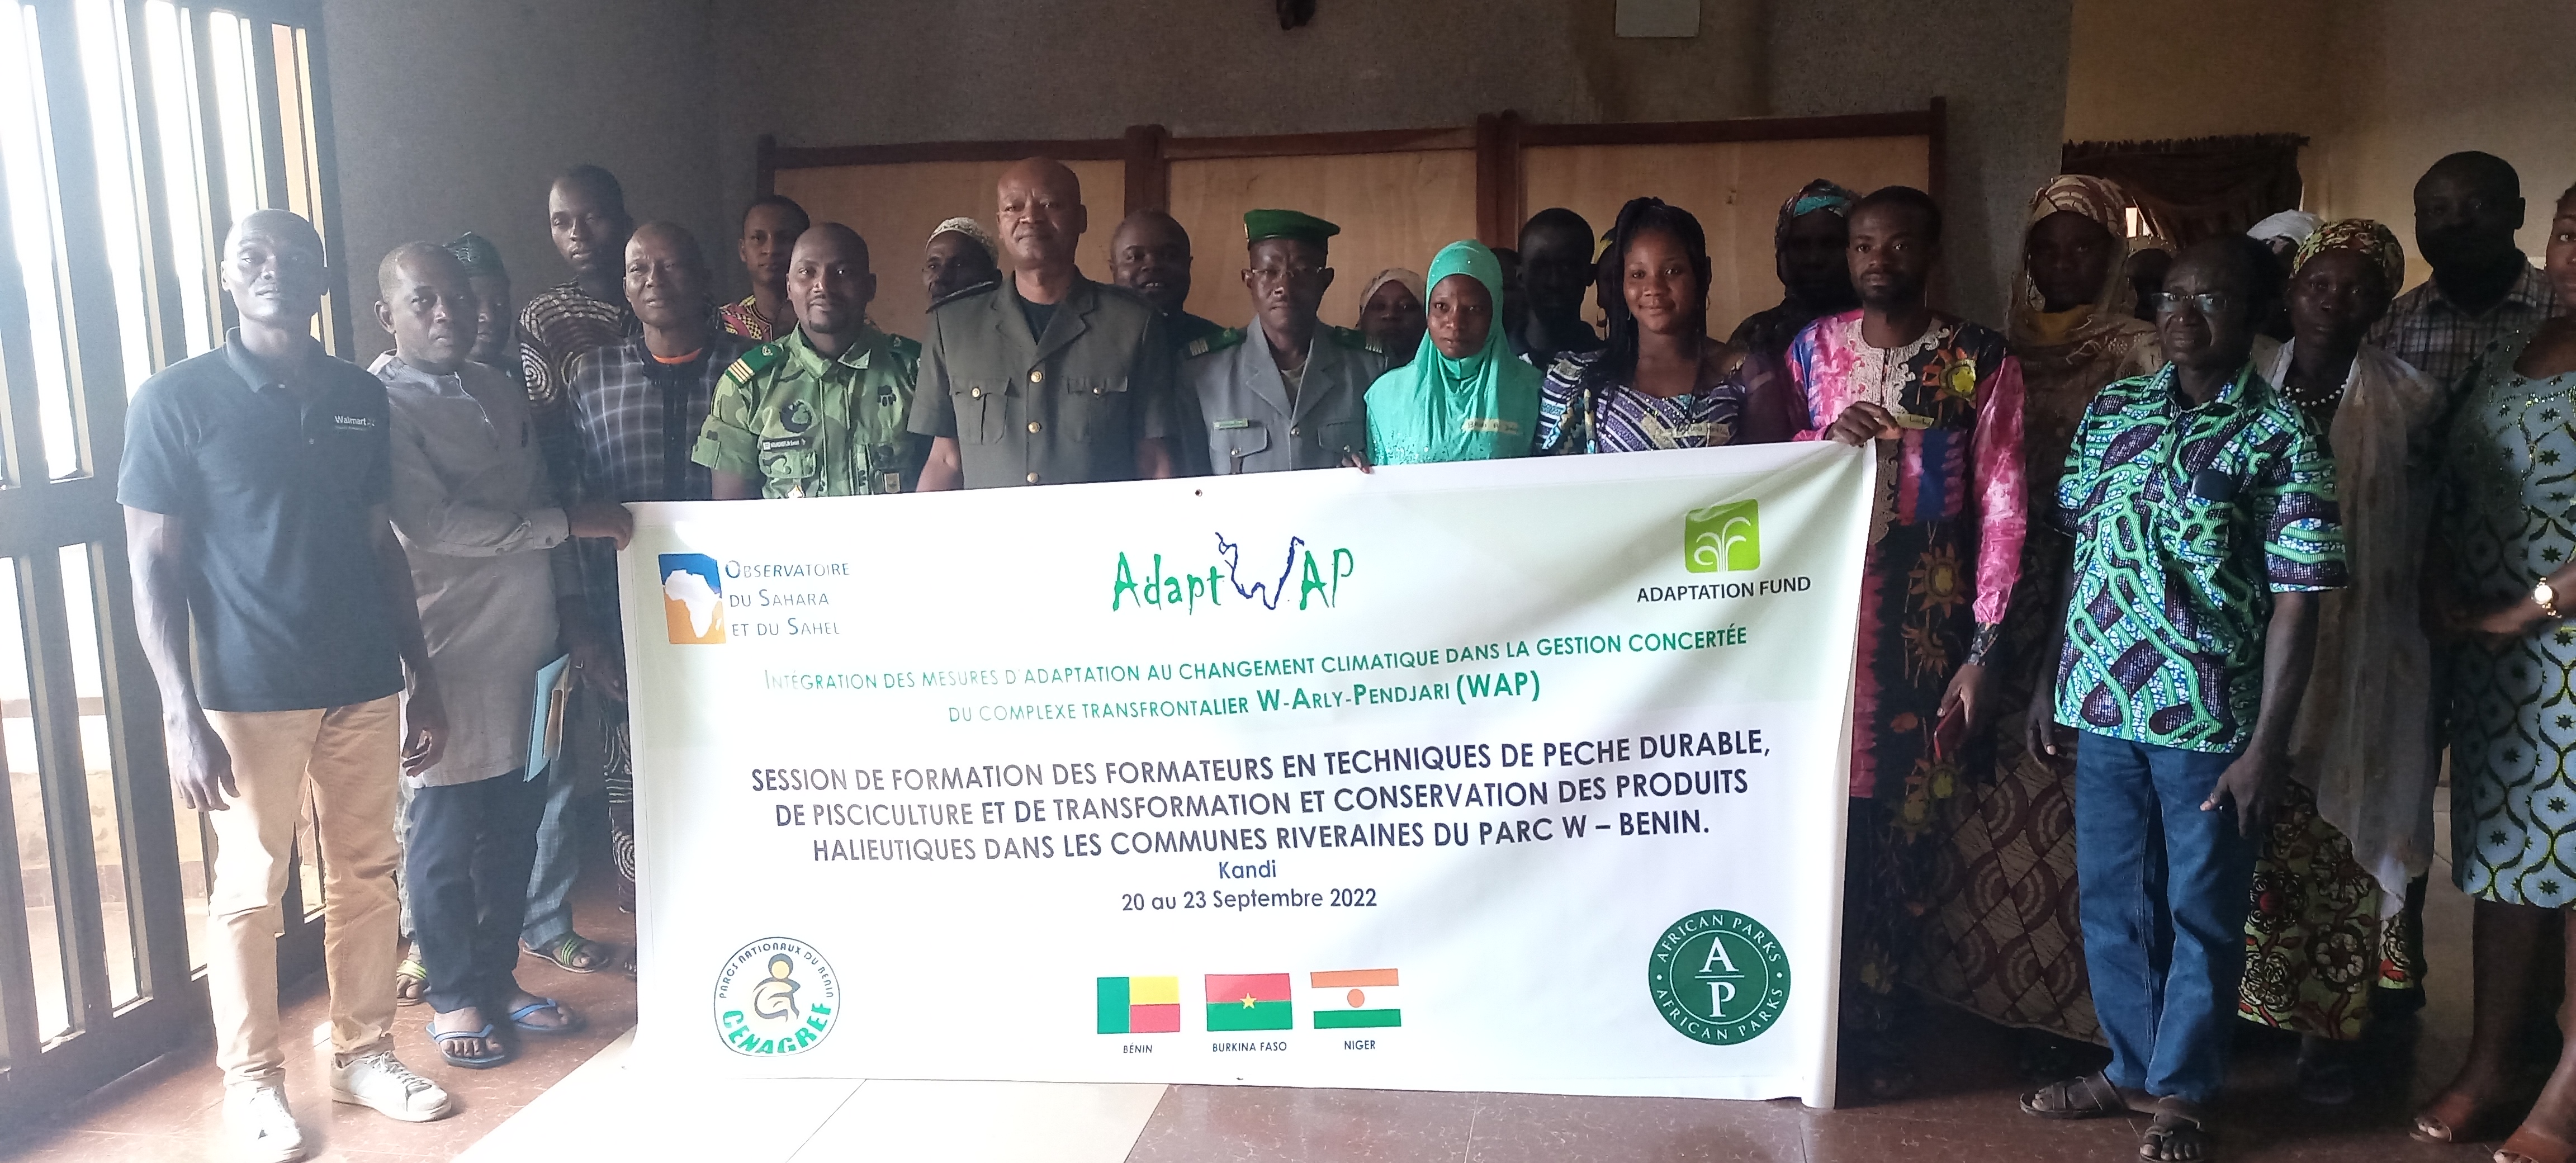 Le Projet AdaptWAP forme les acteurs de la pêche continentale traditionnelle au Bénin, 20-23 septembre 2022